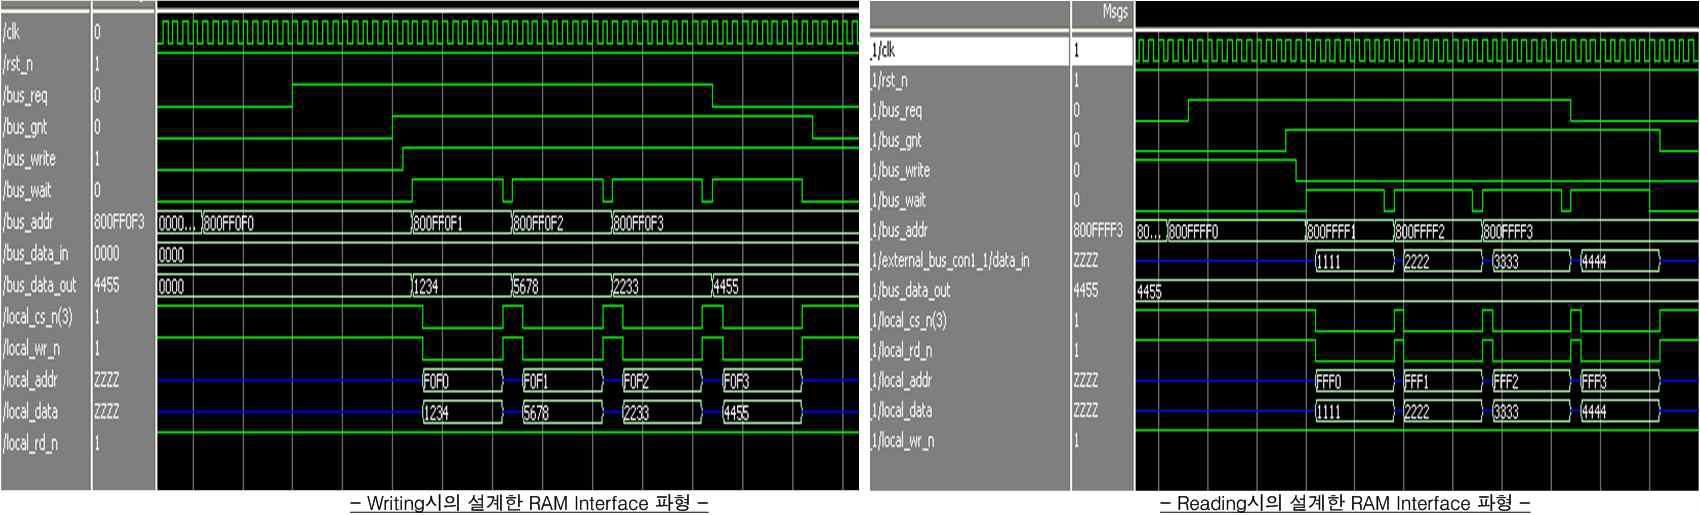 설계한 FPGA의 Data Write/Read시의 RAM Interface 시뮬레이션 파형